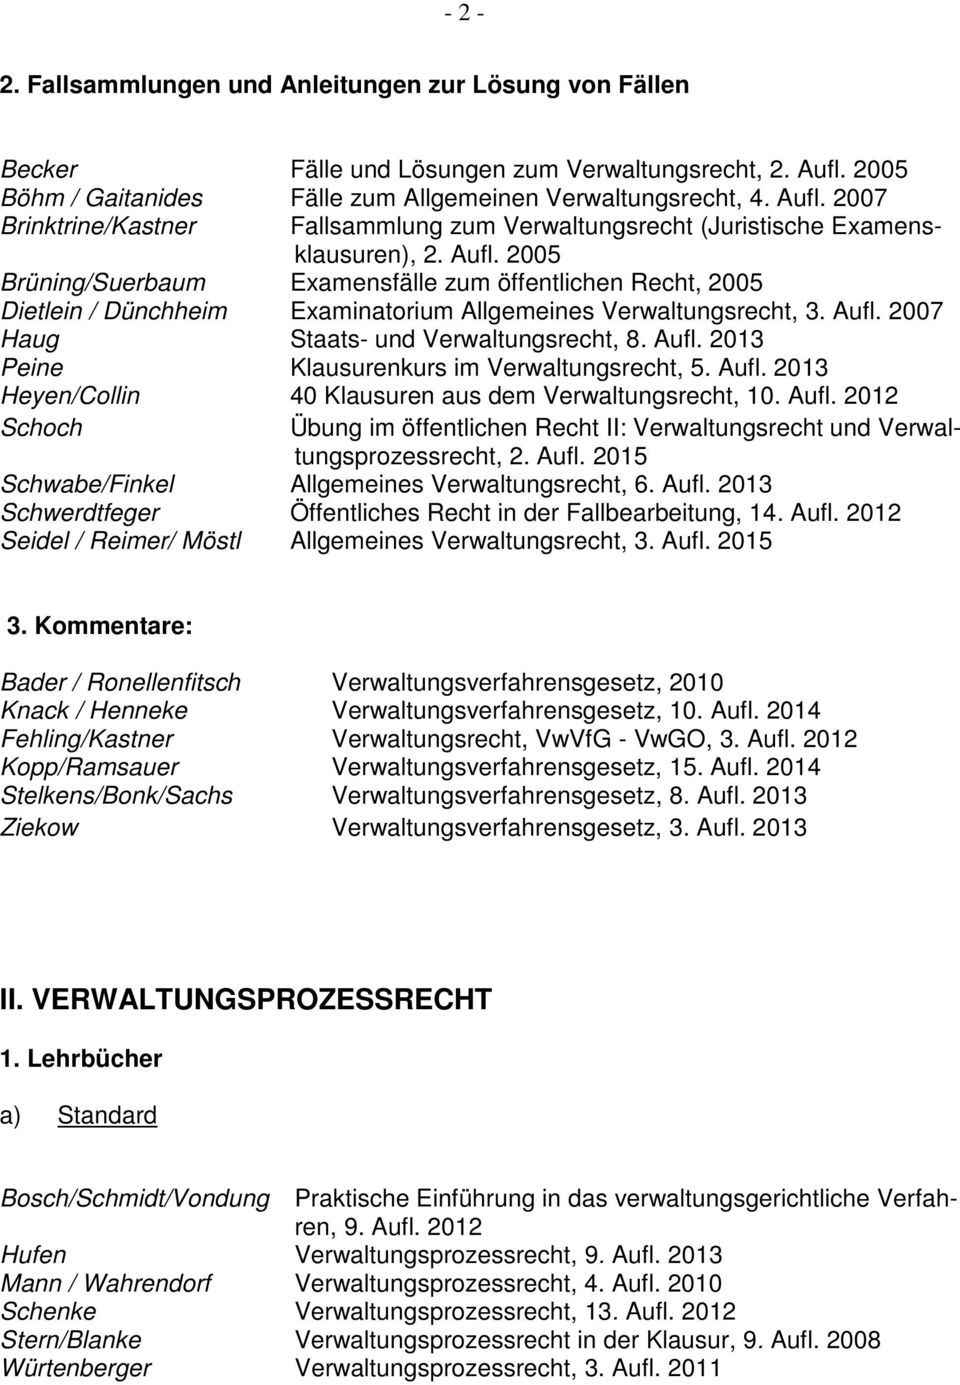 2007 Brinktrine/Kastner Fallsammlung zum Verwaltungsrecht (Juristische Examensklausuren), 2. Aufl.